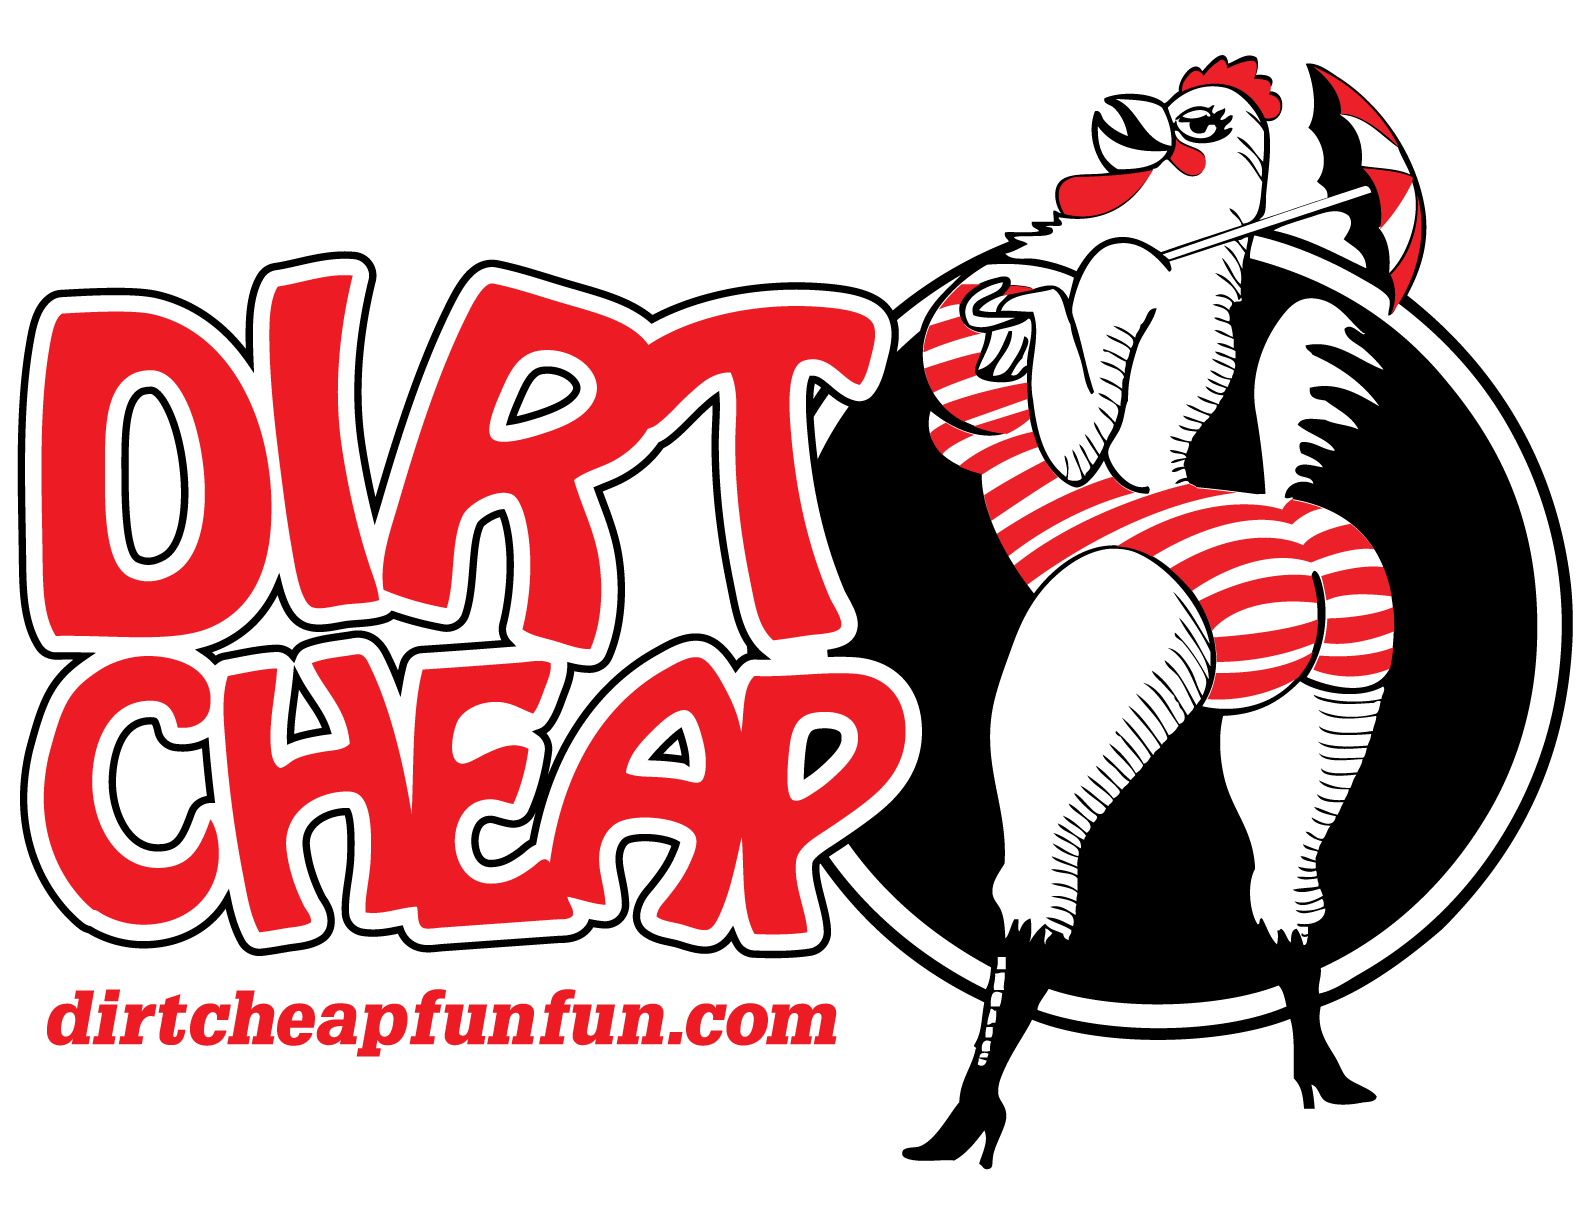 Dirt Cheap Logo